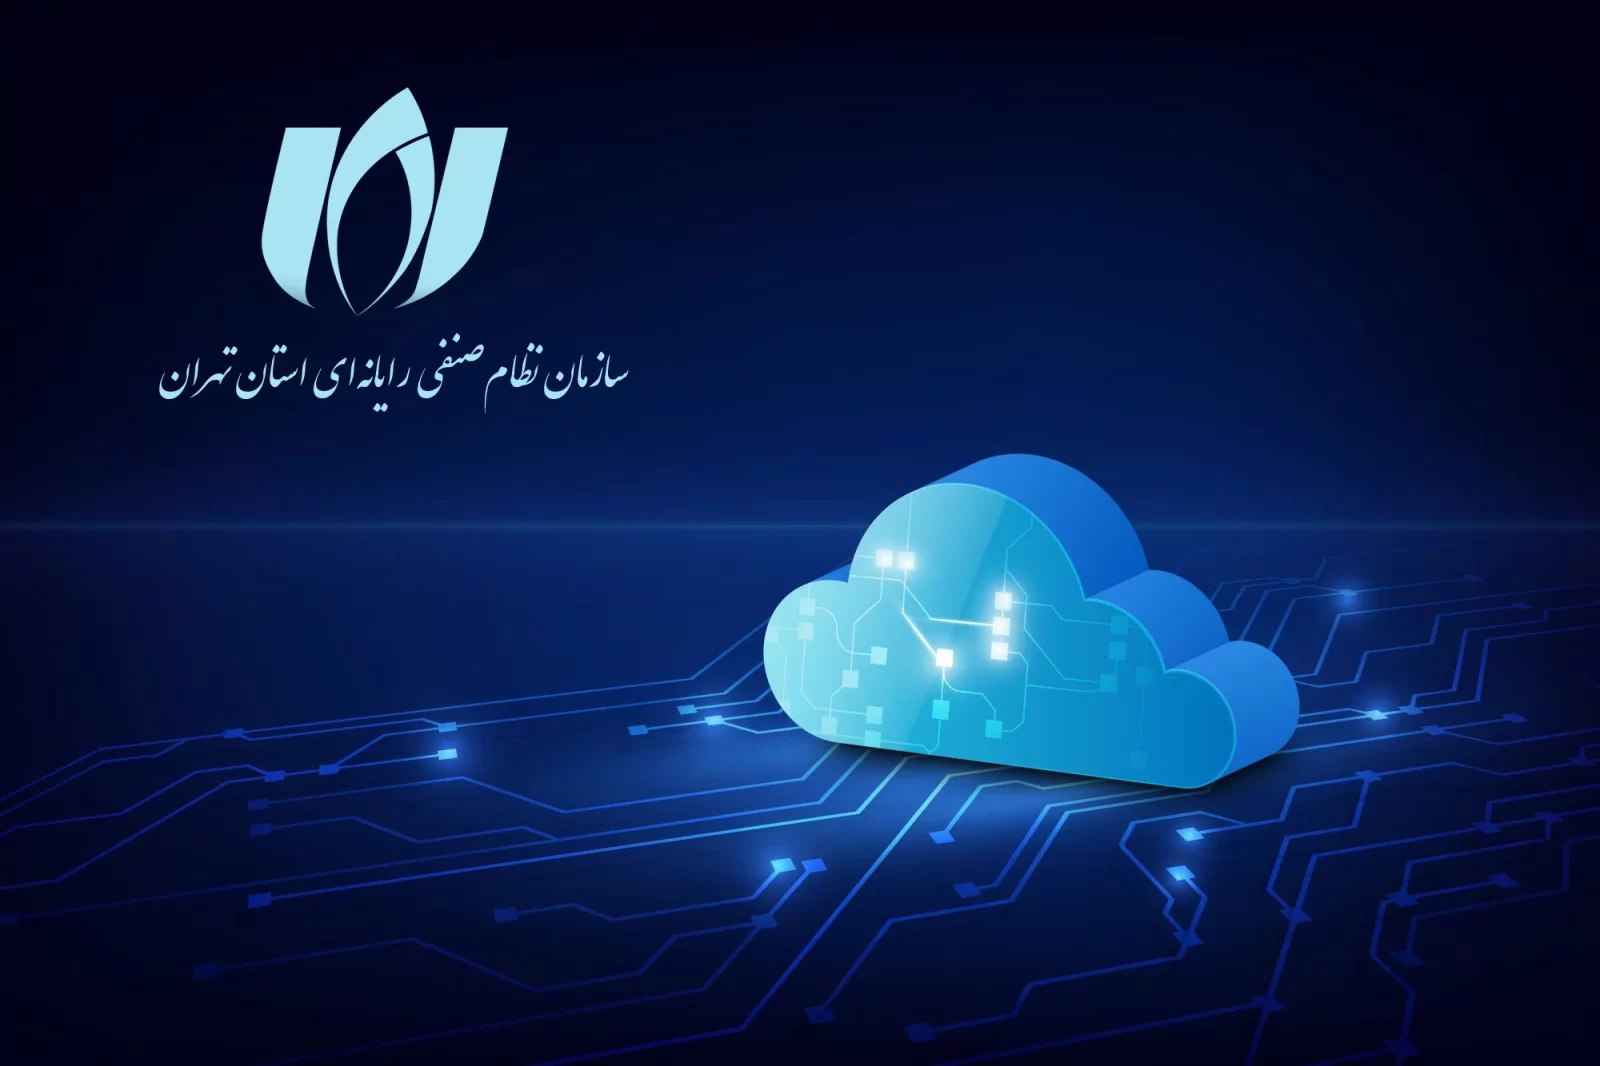 کمیسیون خدمات مراکز داده و ابر سازمان نظام صنفی رایانه ای استان تهران